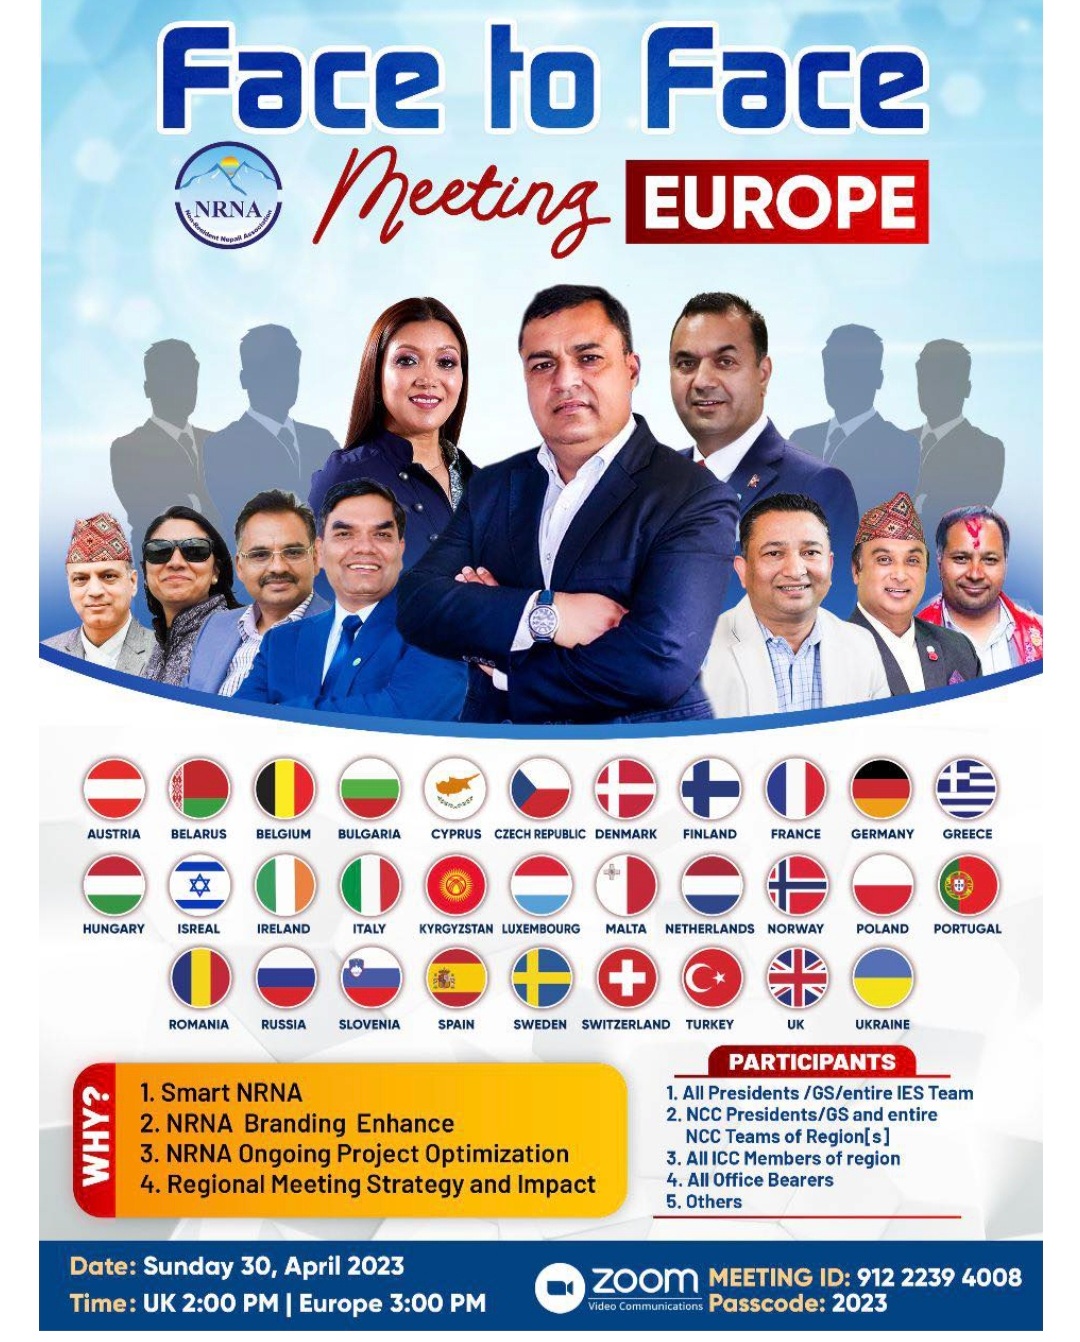 एनआरएनए युरोपका एनसिसीको फेस टु फेस बैठक ३० अप्रिलमा, लाग्यो महाधिवेशन